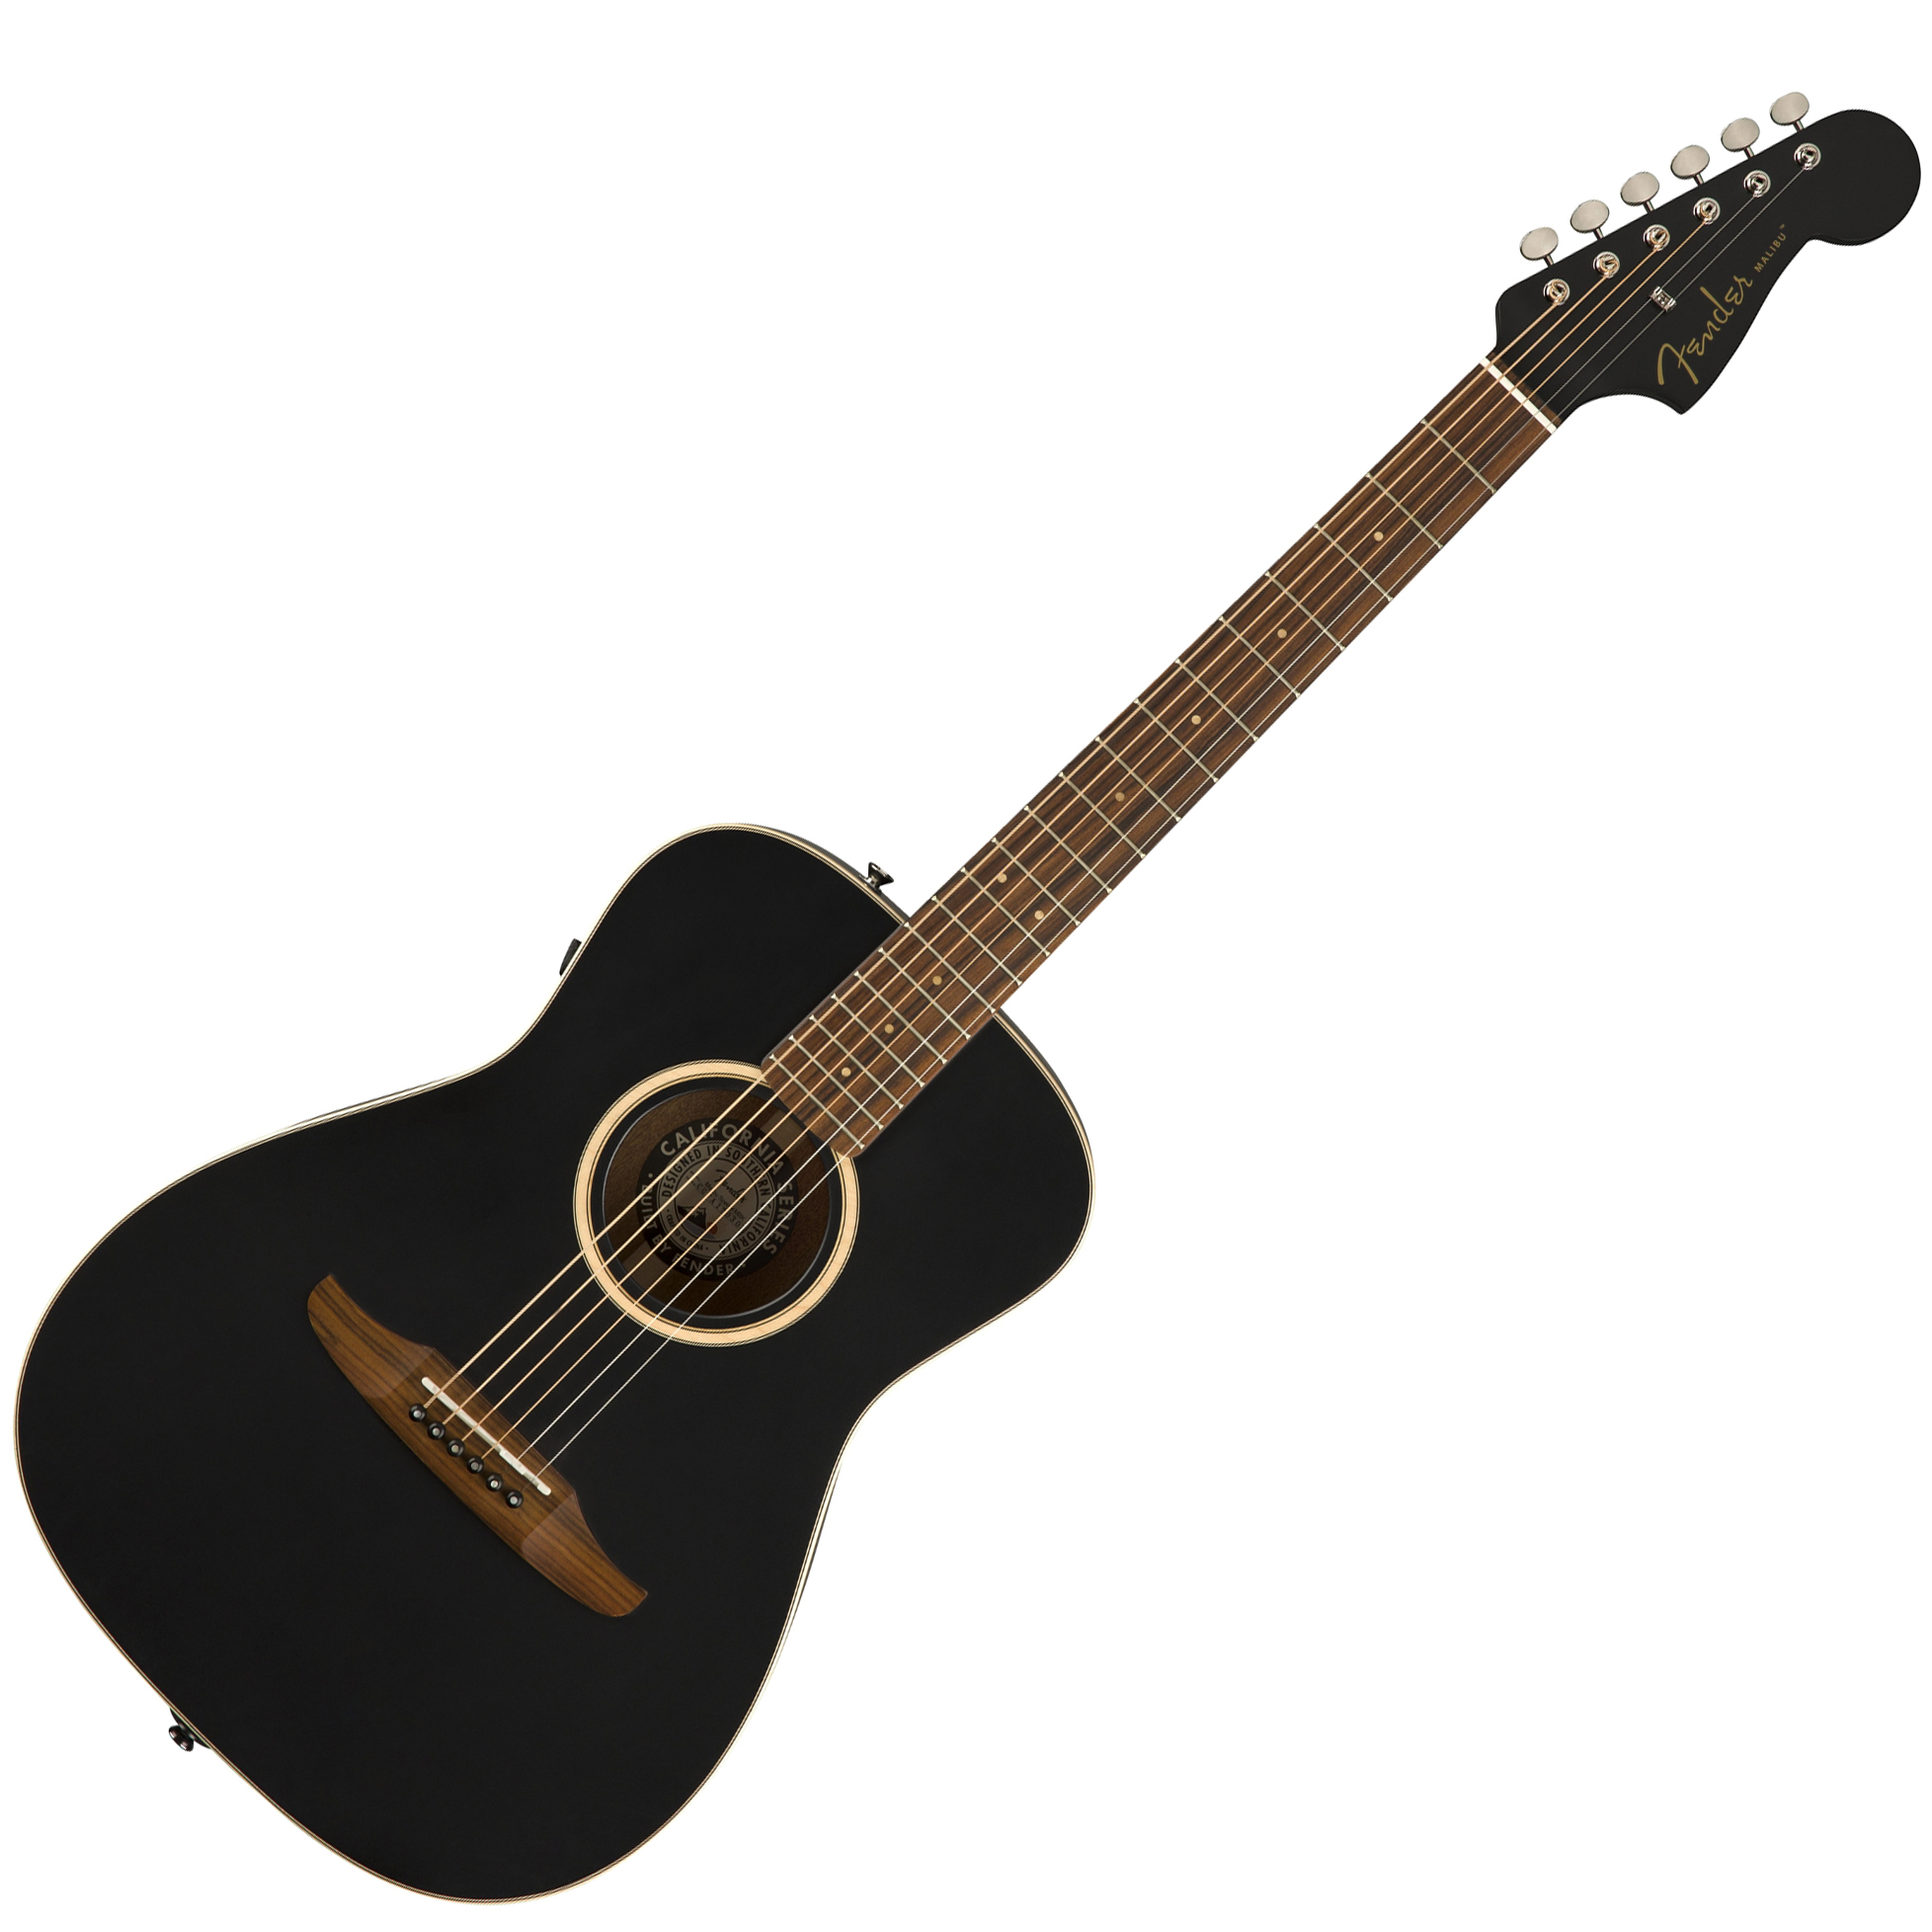 Fender Malibu Special Matte Black + púzdro | Obrázok 1 | eplay.sk